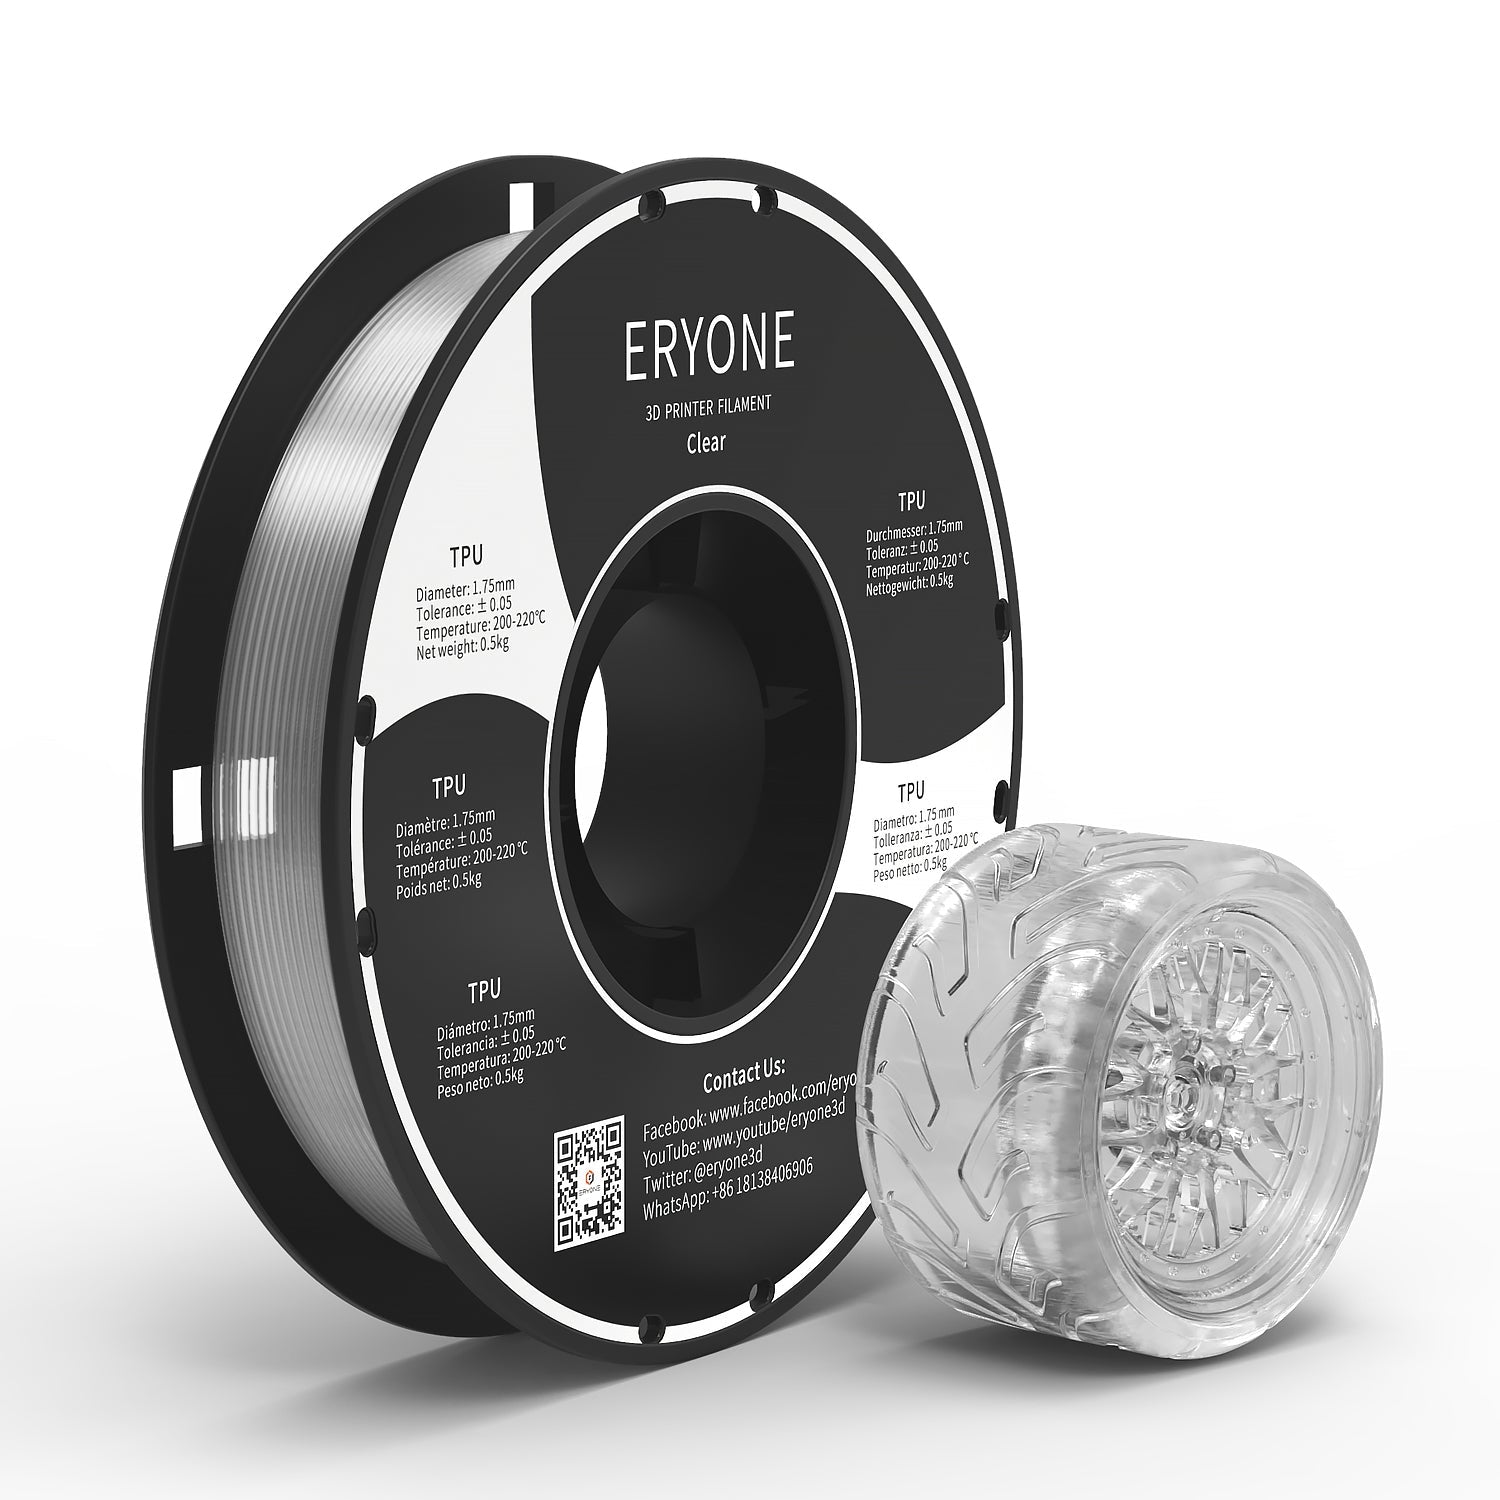 ERYONE Carbon Fiber Filament PLA 1.75 mm, PLA Filament for 3D Printer,  -0.03 mm, 1 kg (2.2 lbs)/Spool, Black